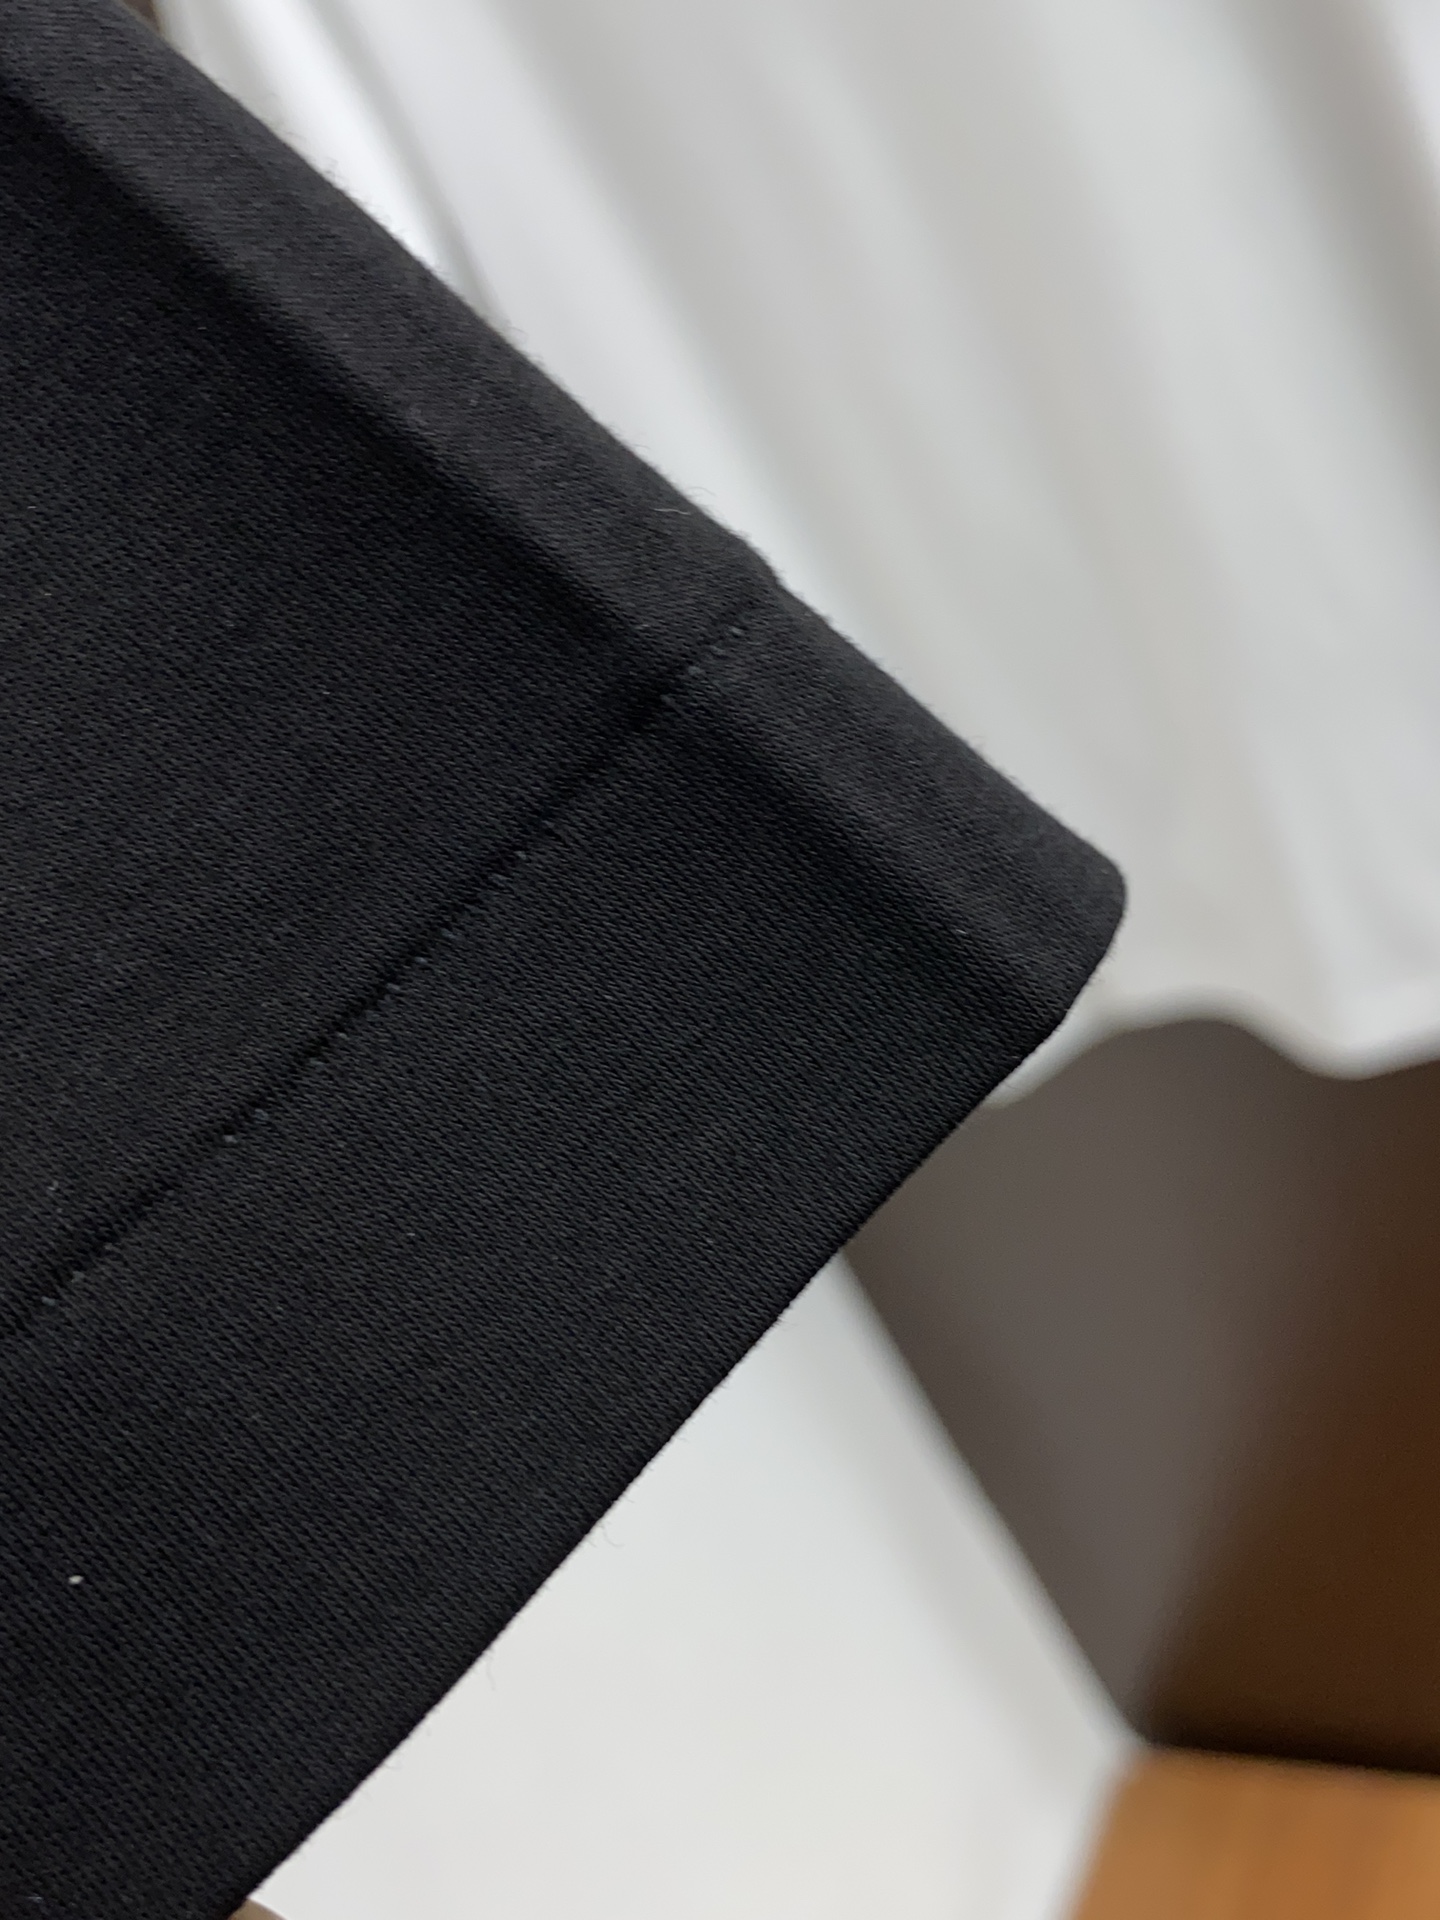 圣罗兰24SSS精选新疆长绒棉纱线环保染色定型面料上身柔软舒适领子螺纹同步染色制造左胸前口袋装饰底边采用